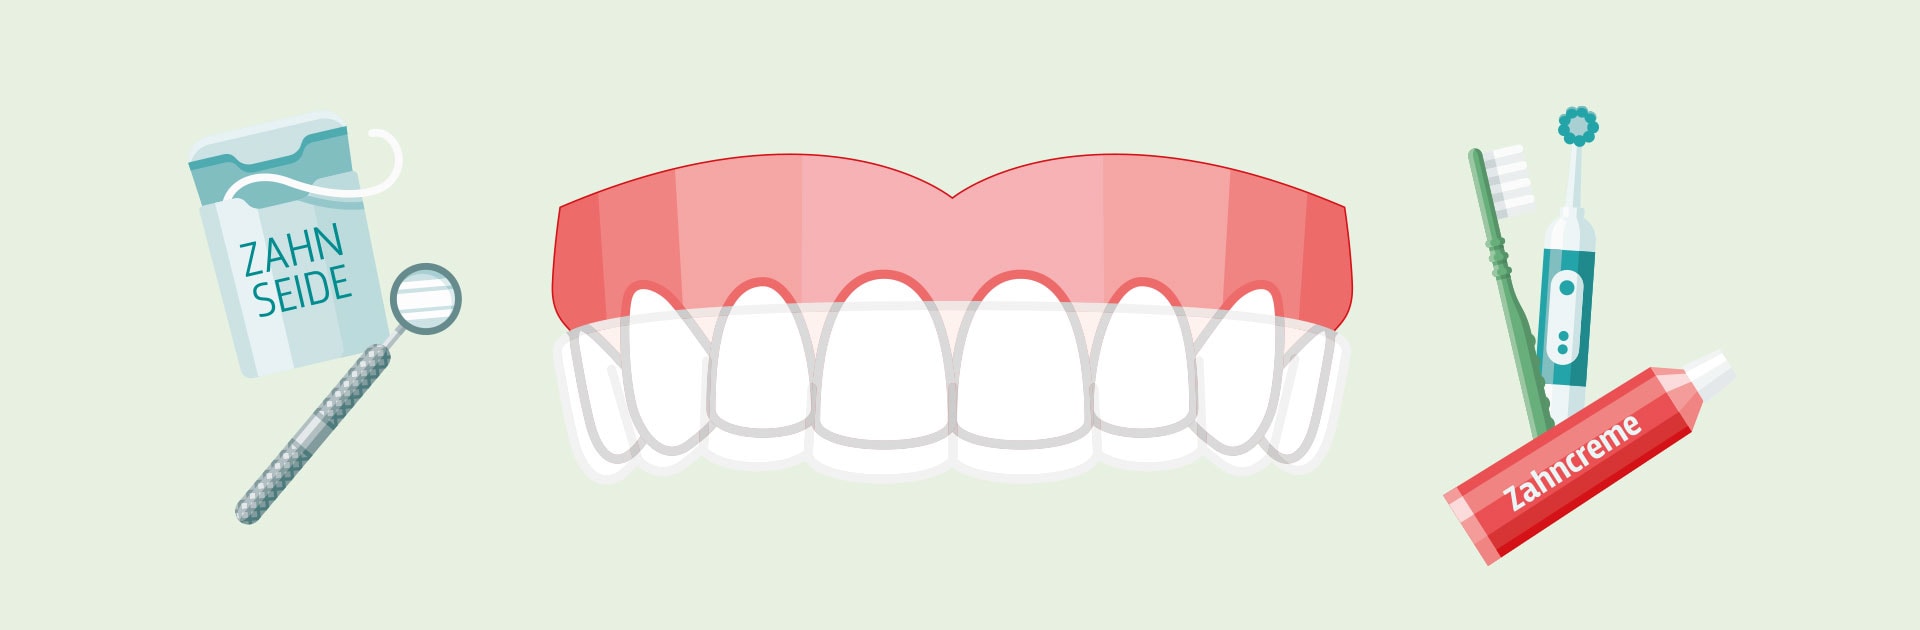 Entspannt Zähne zeigen: Mundgesundheit am Arbeitsplatz